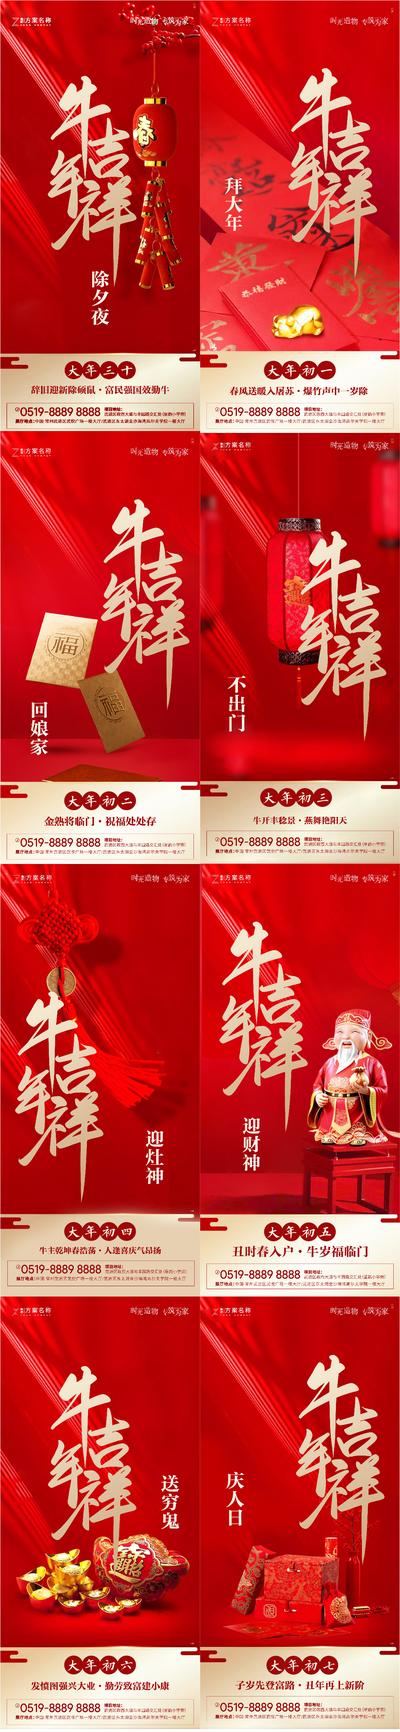 南门网 海报 地产 中国传统节日 新年 春节 过年 年俗 系列 红包 中国结 礼品